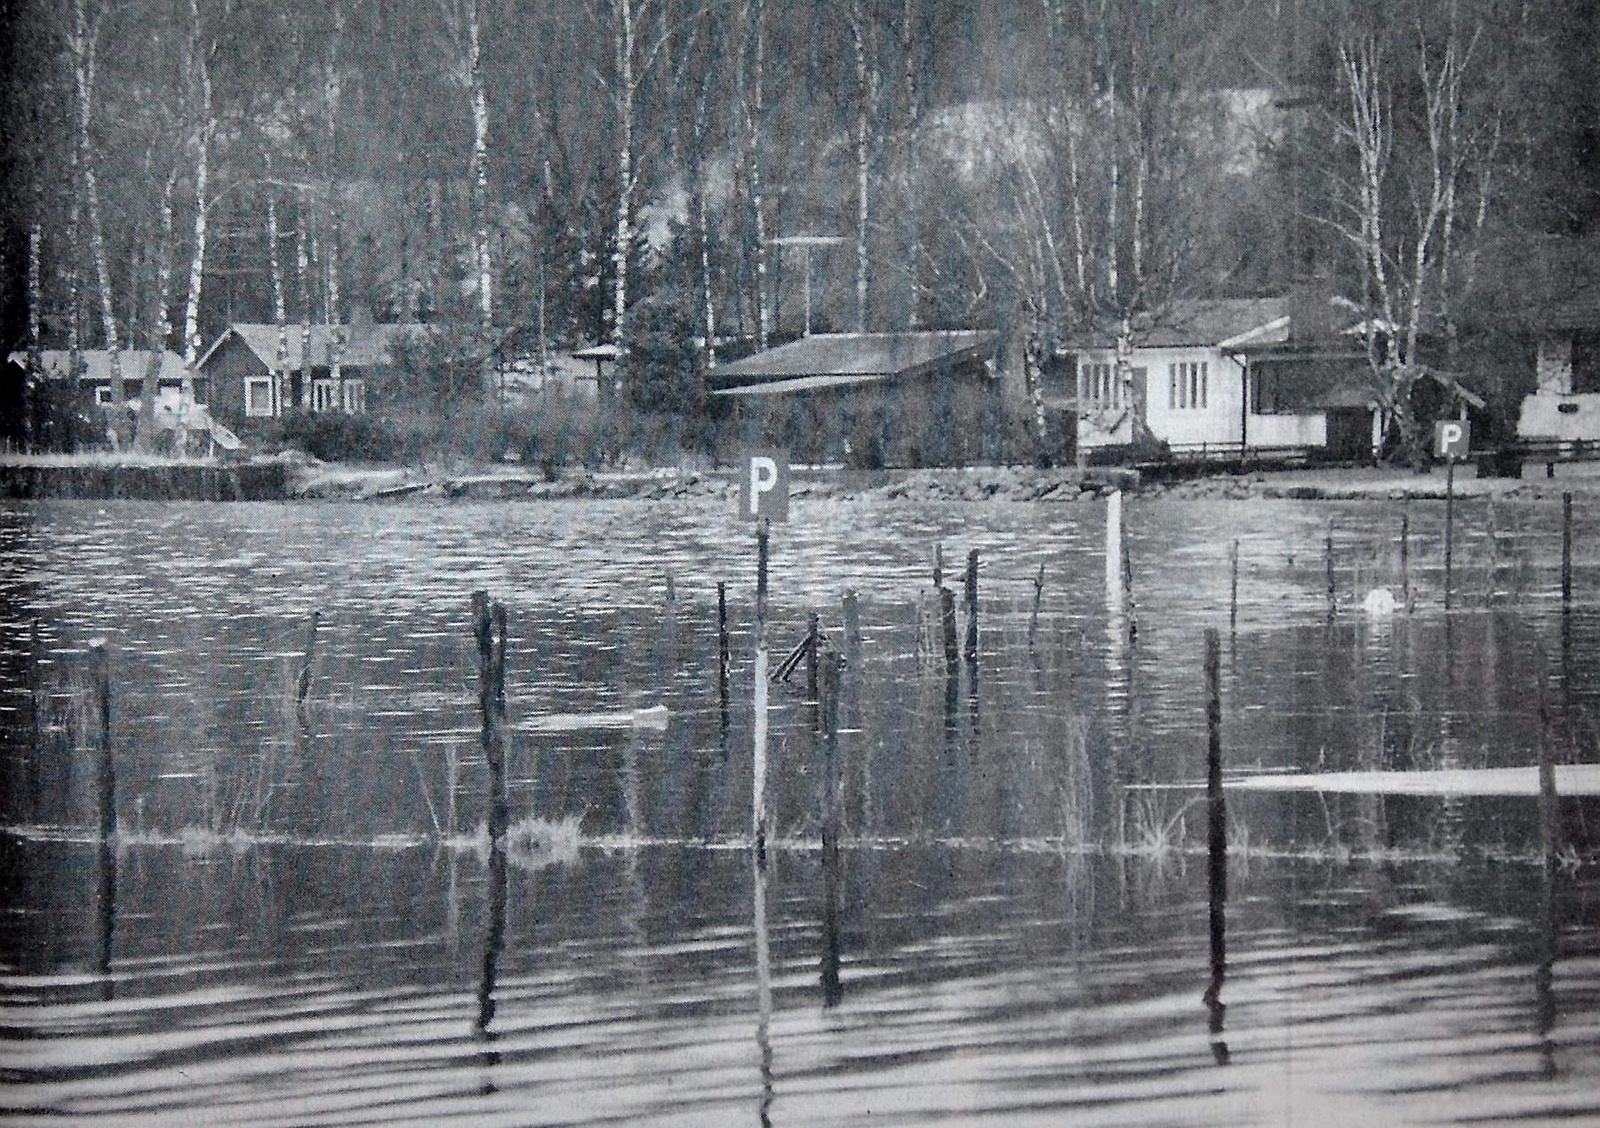 Parkeringen vid Tormestorps båthamn är helt översvämmad.
Arkiv: Åke Ljungberg